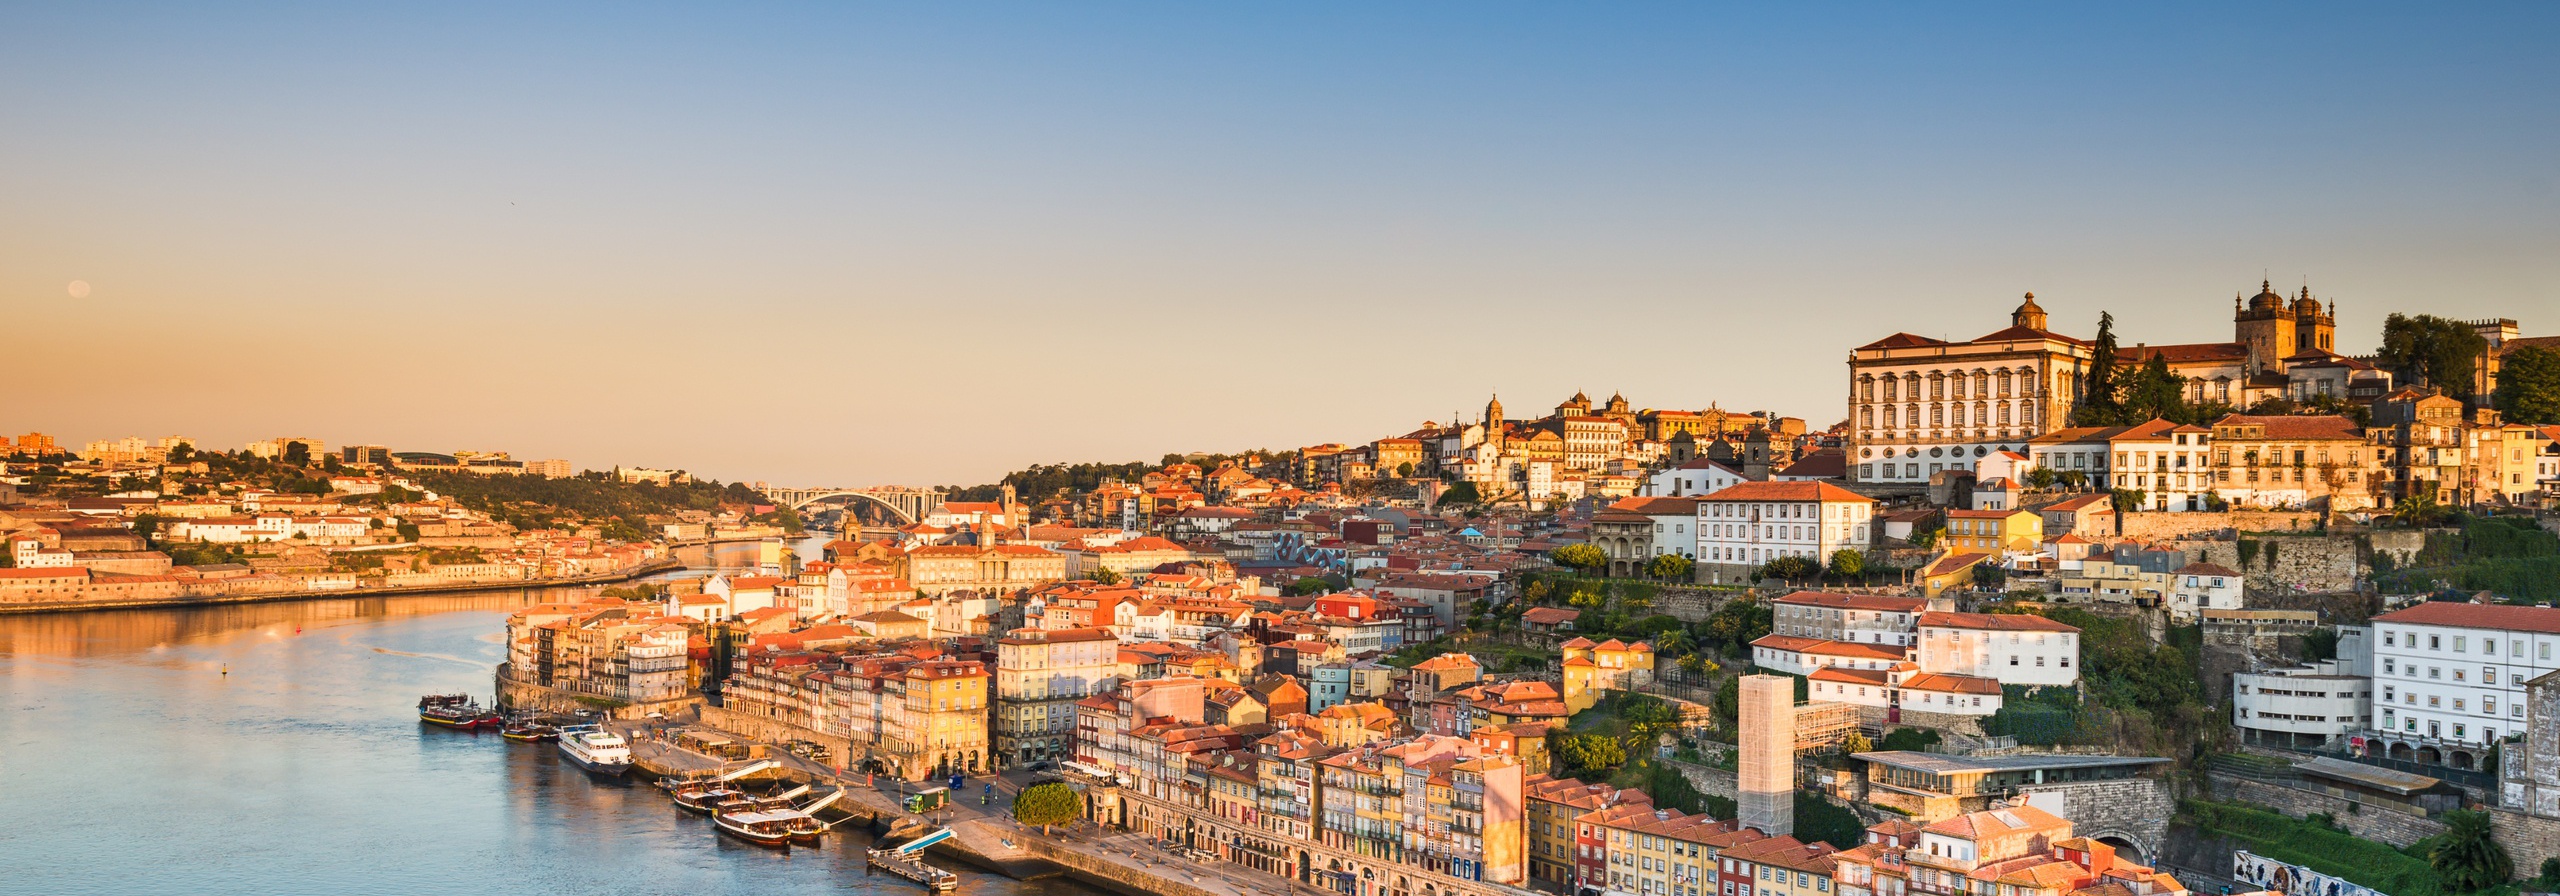 Centro Histórico do Porto - Património Munidal da UNESCO